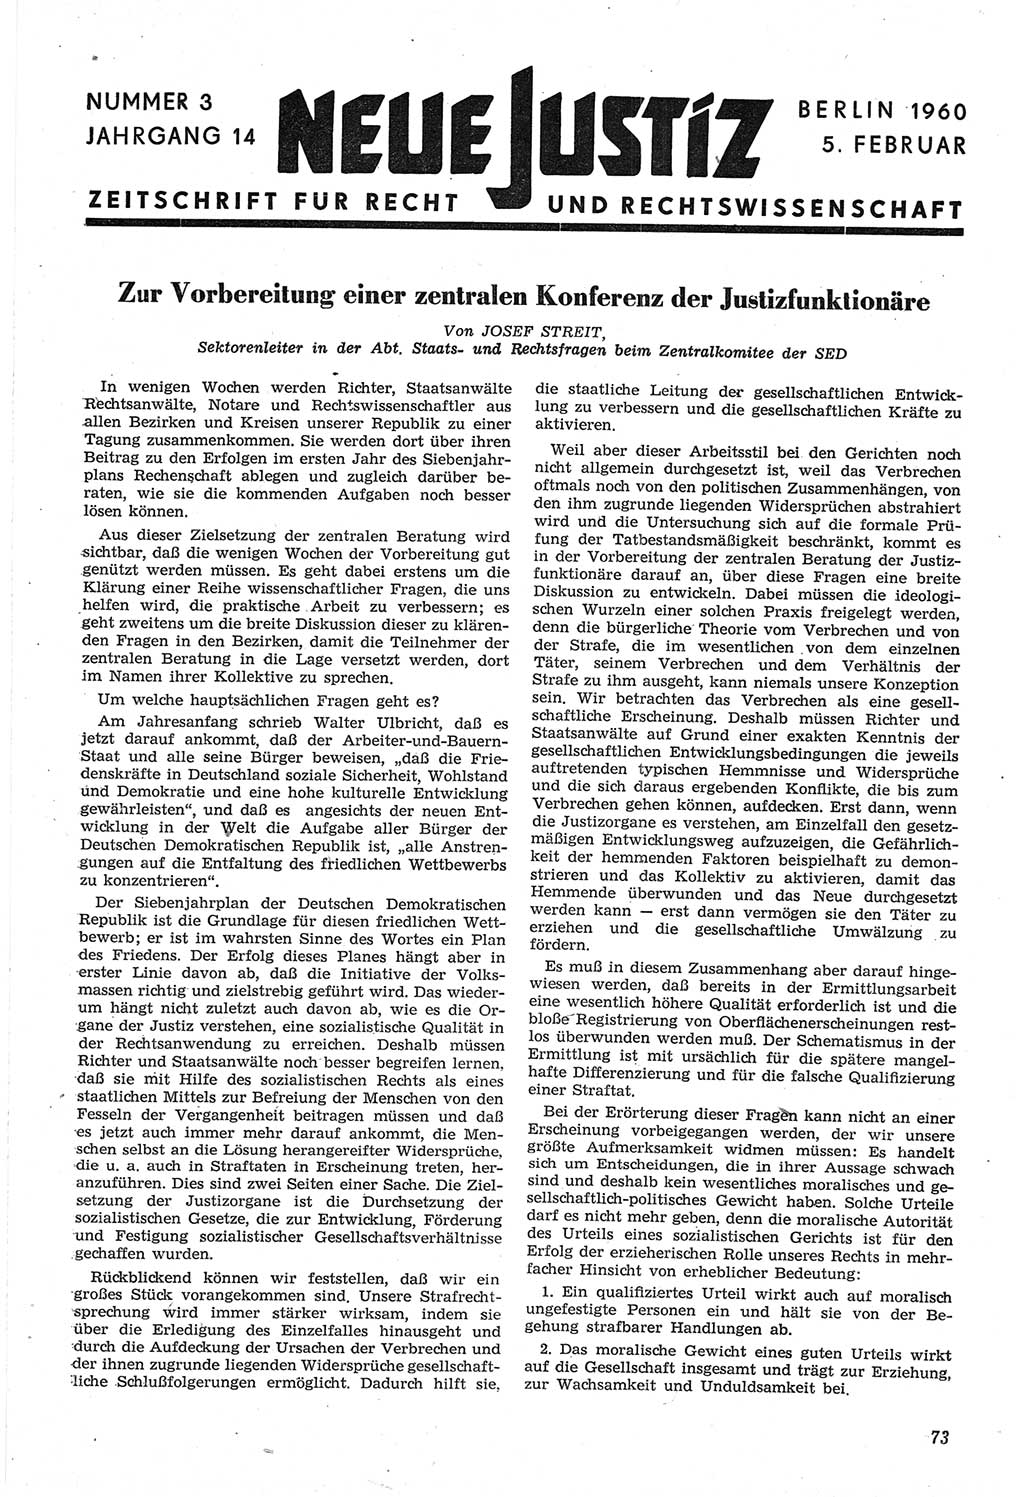 Neue Justiz (NJ), Zeitschrift für Recht und Rechtswissenschaft [Deutsche Demokratische Republik (DDR)], 14. Jahrgang 1960, Seite 73 (NJ DDR 1960, S. 73)